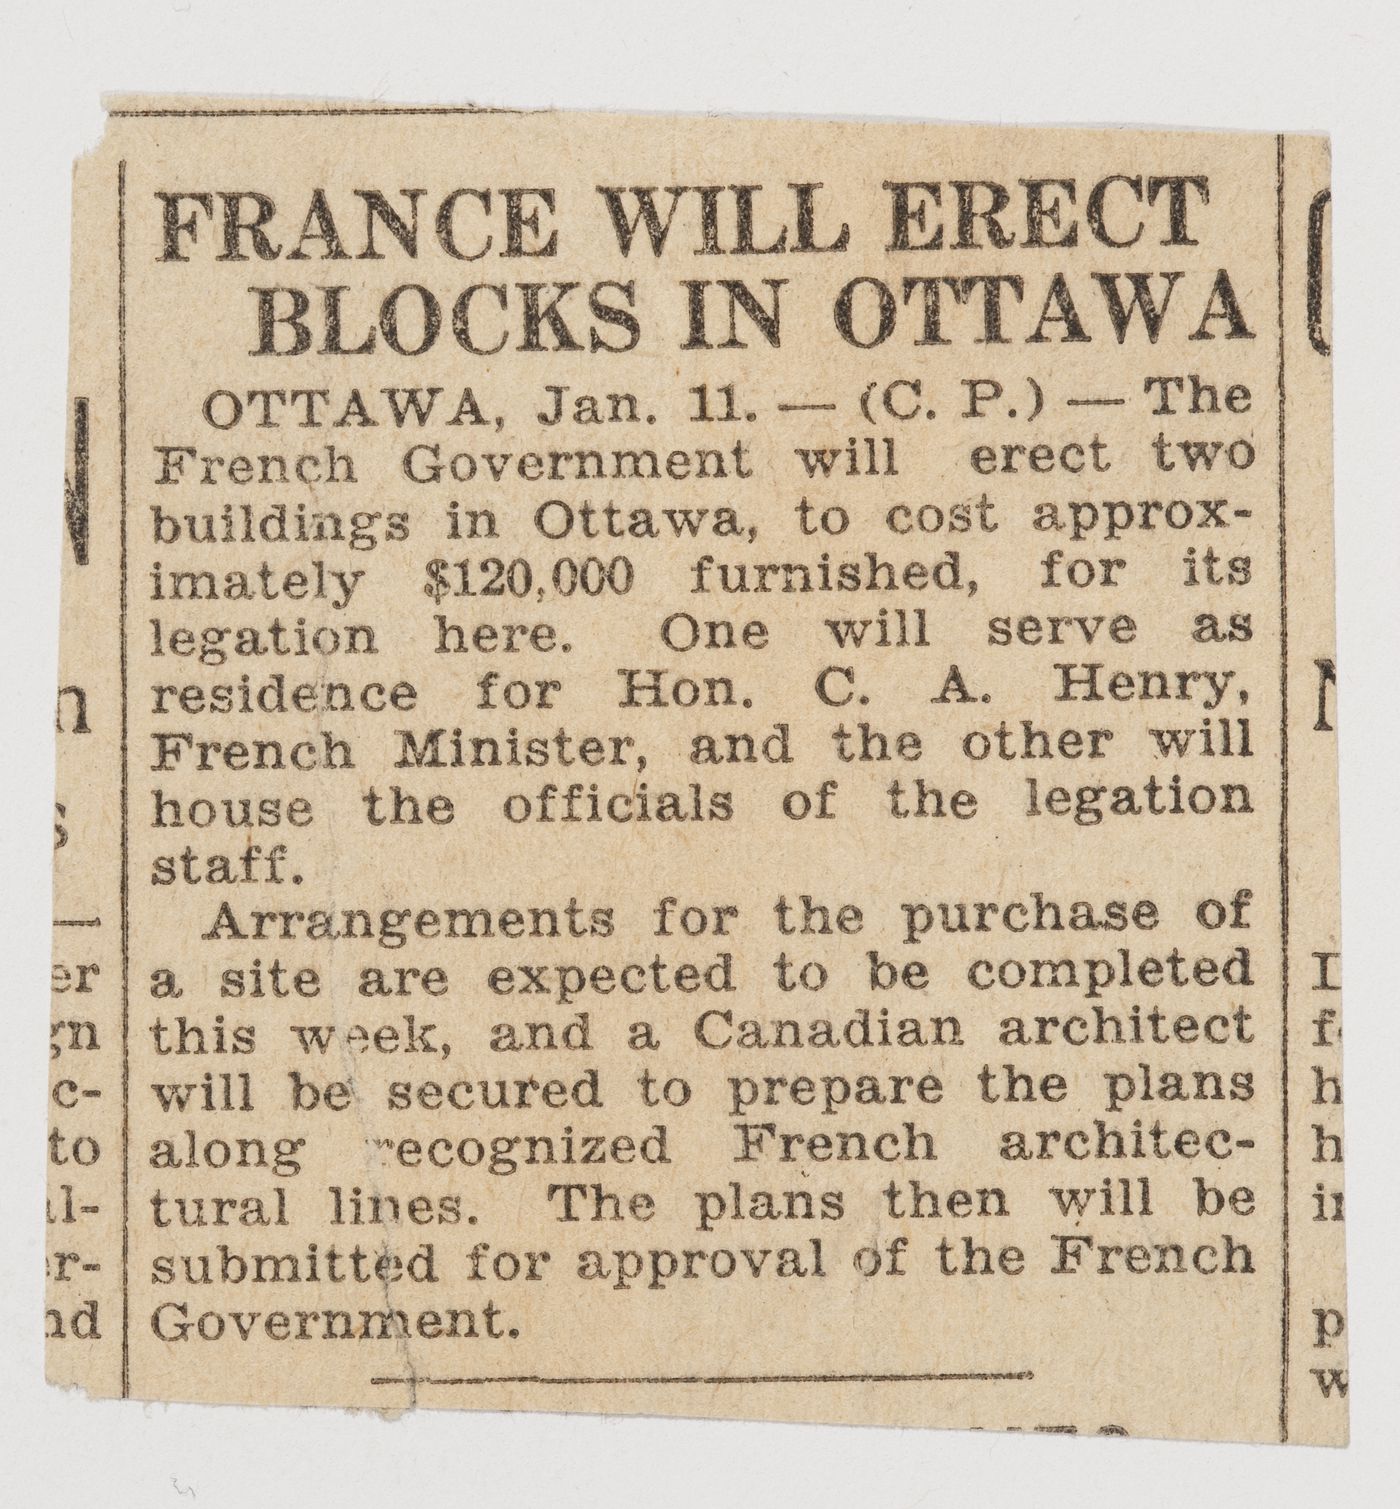 Coupure de presse au sujet de la construction d'immeubles de la Légation de France, Ottawa, Ontario